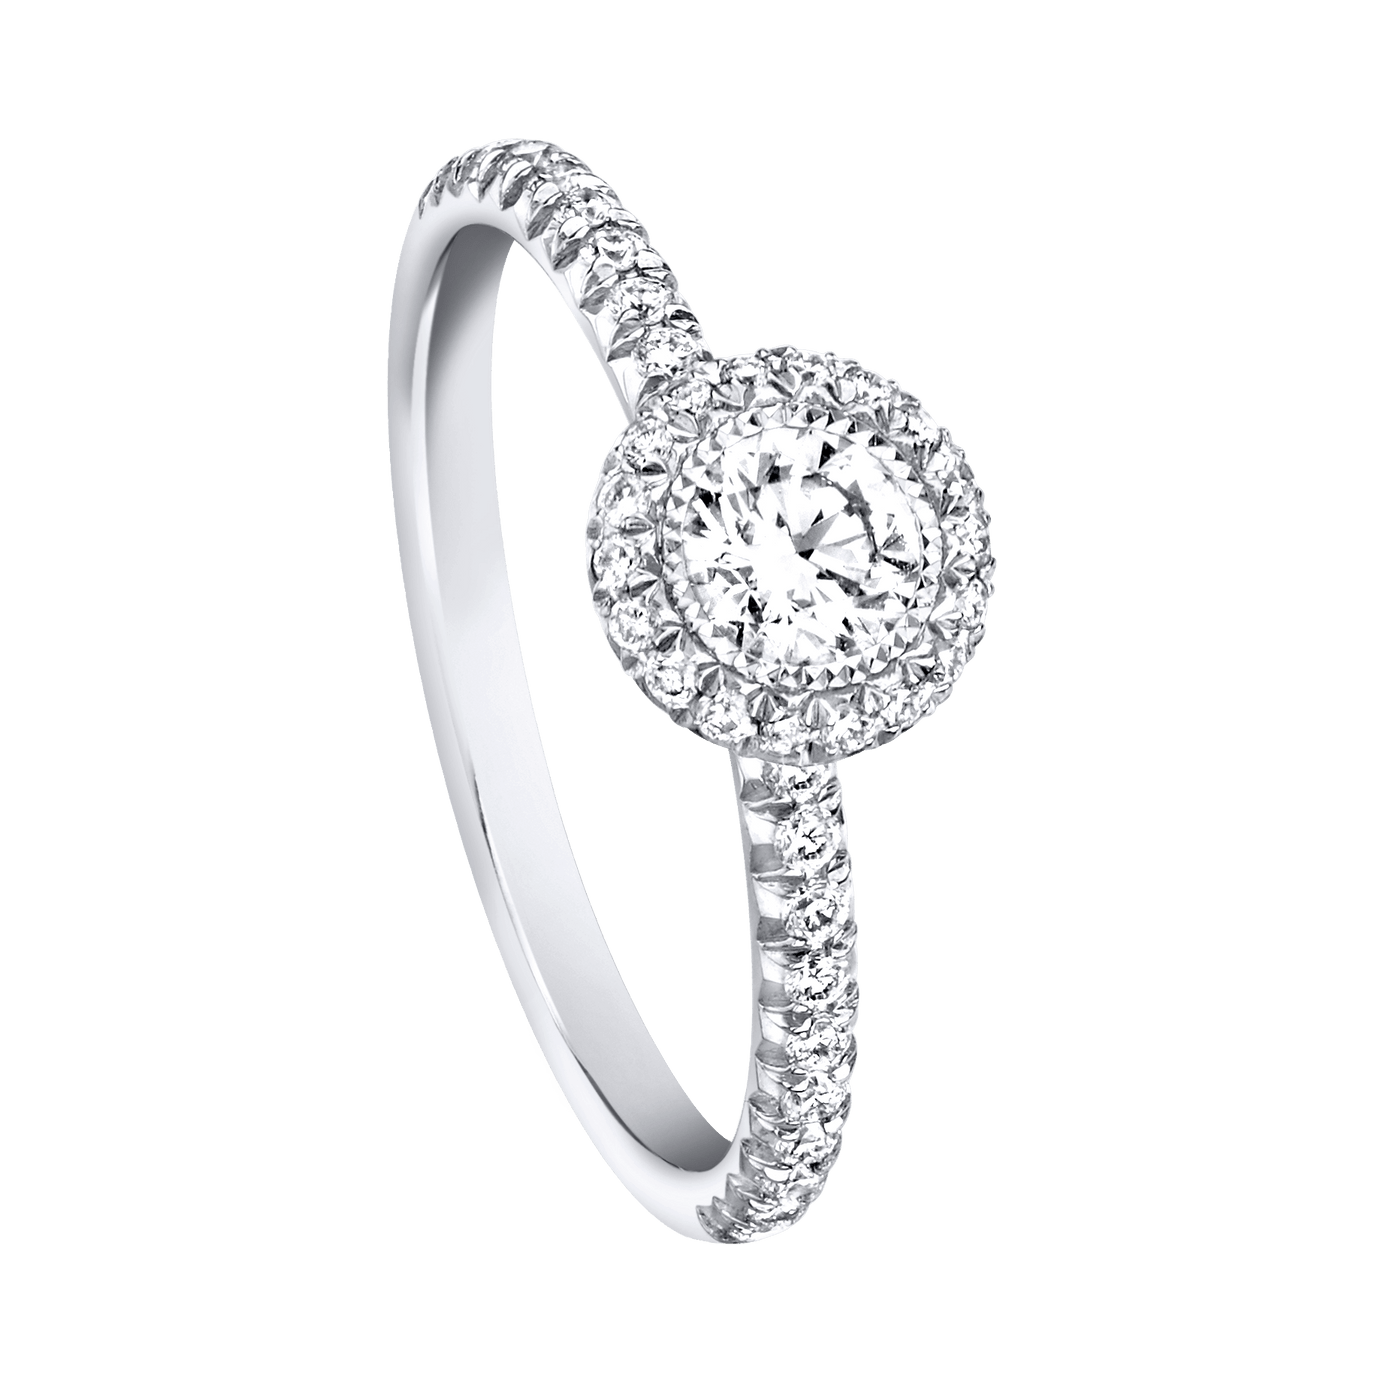 Piaget White Gold Diamond Ring G34UR500